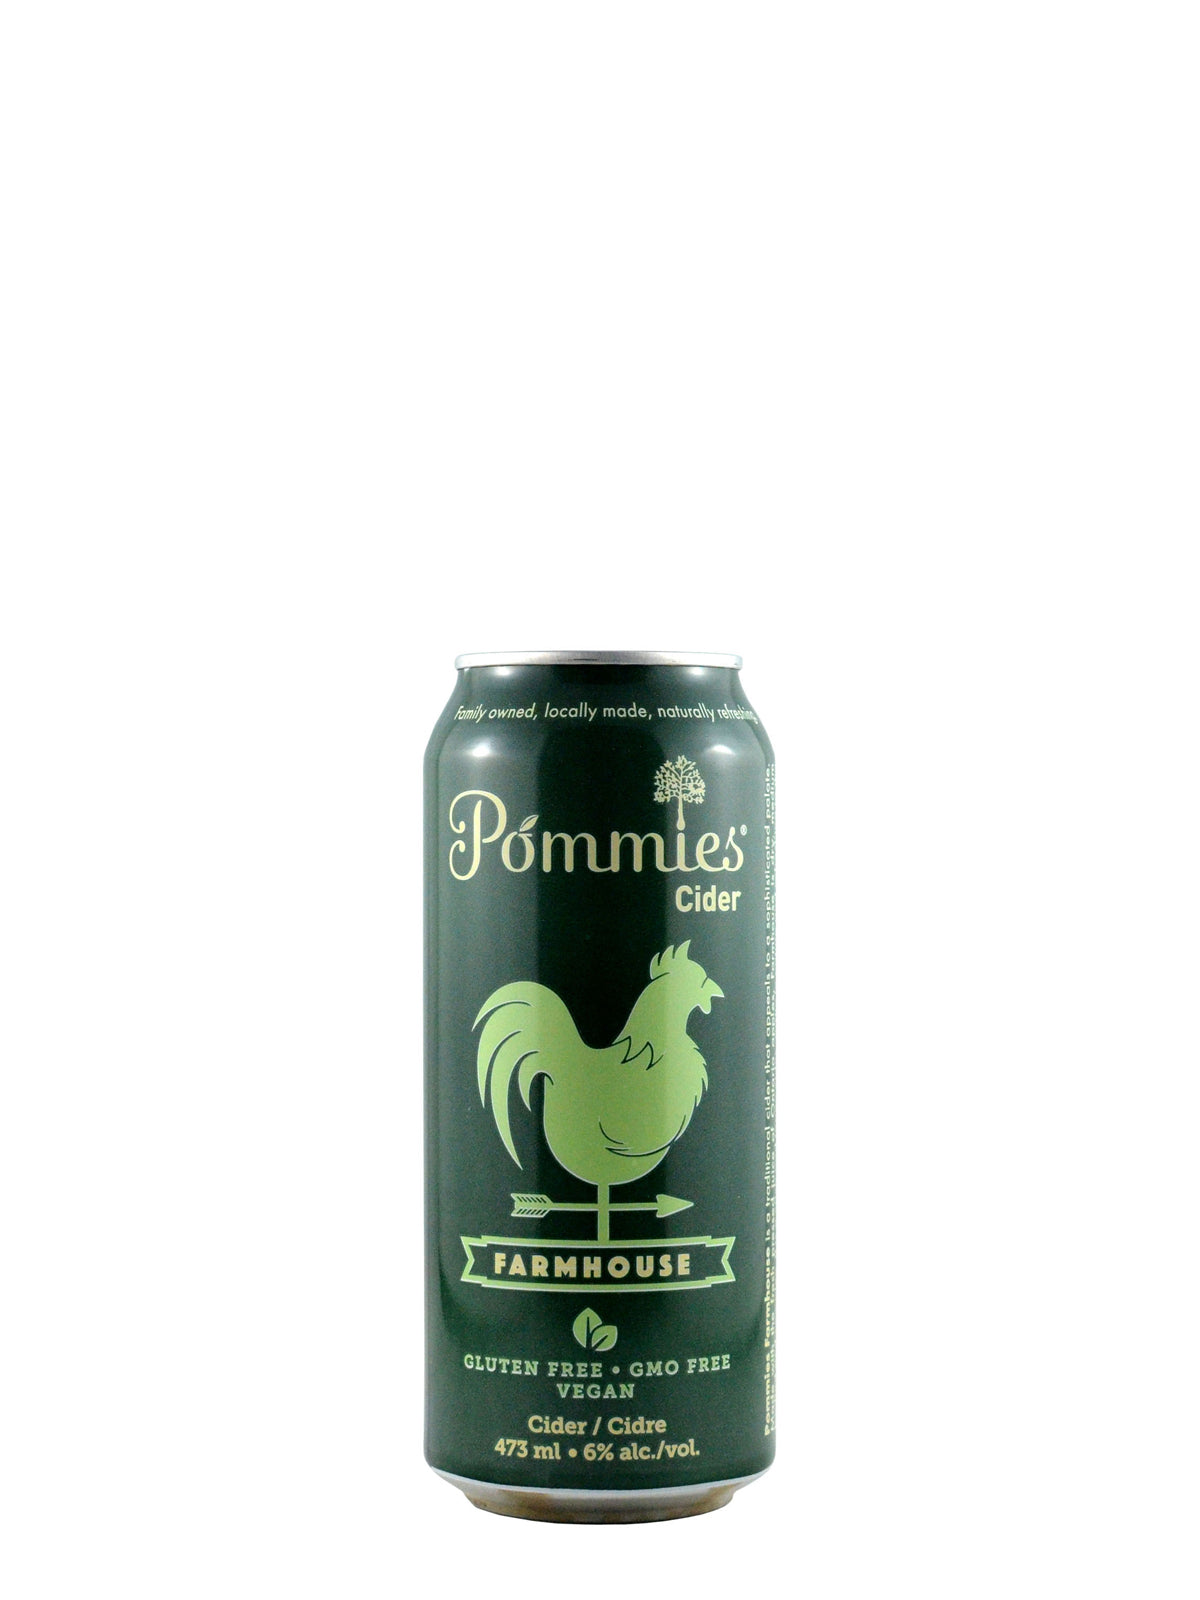 Pommies Farmhouse Cider 473ml